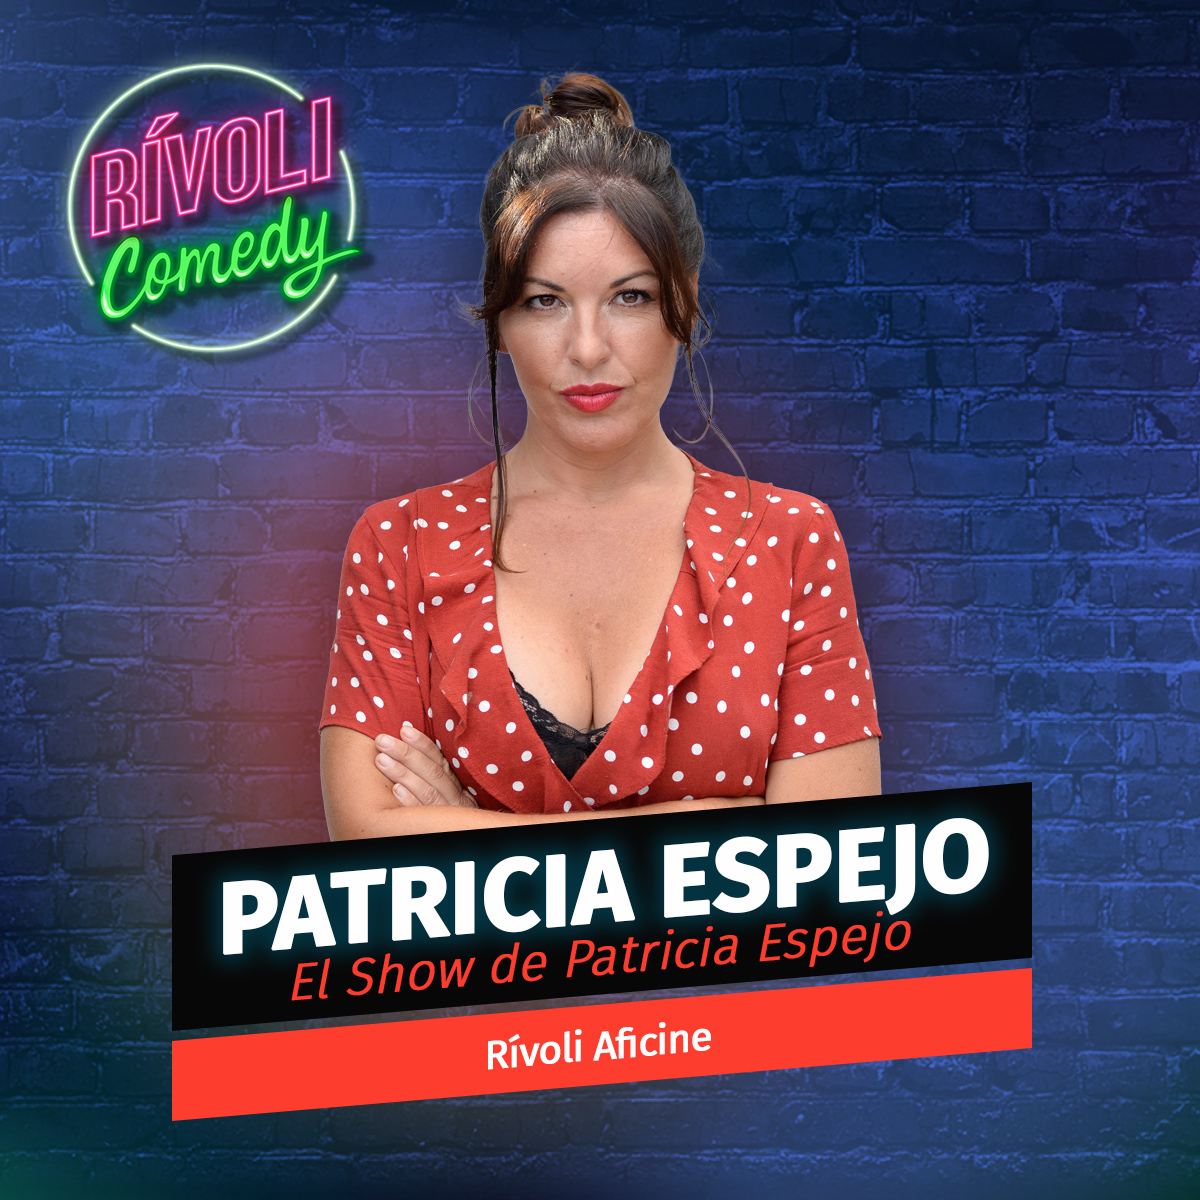 Patricia Espejo | El show de Patricia Espejo · 10 de junio · Palma de Mallorca (Rívoli Comedy)